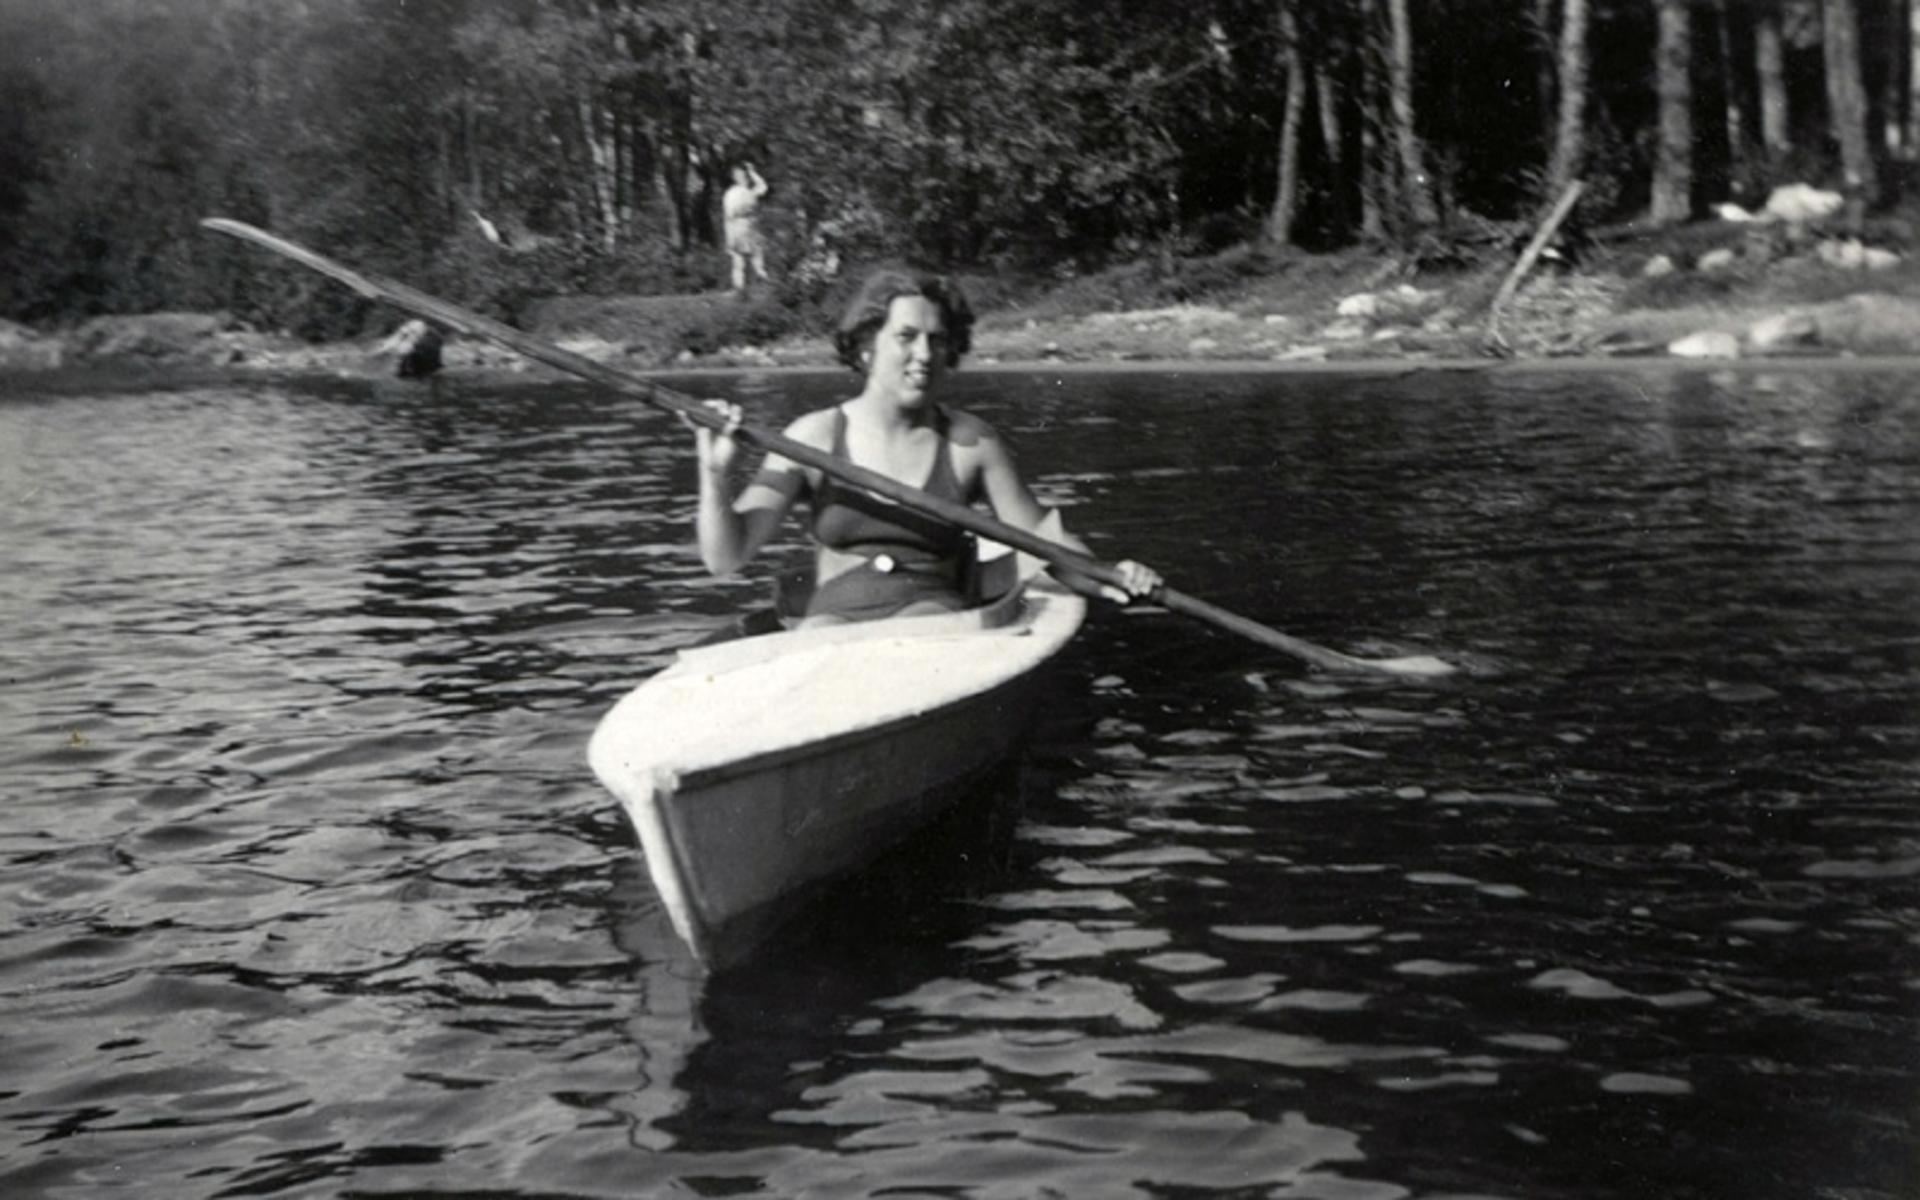 Sommargästen Eivor Dahlberg vid en av stränderna vid Tulebo Strandväg. Ser lite osäkert ut… Kanske första gången i kanot? Cirka 1935.